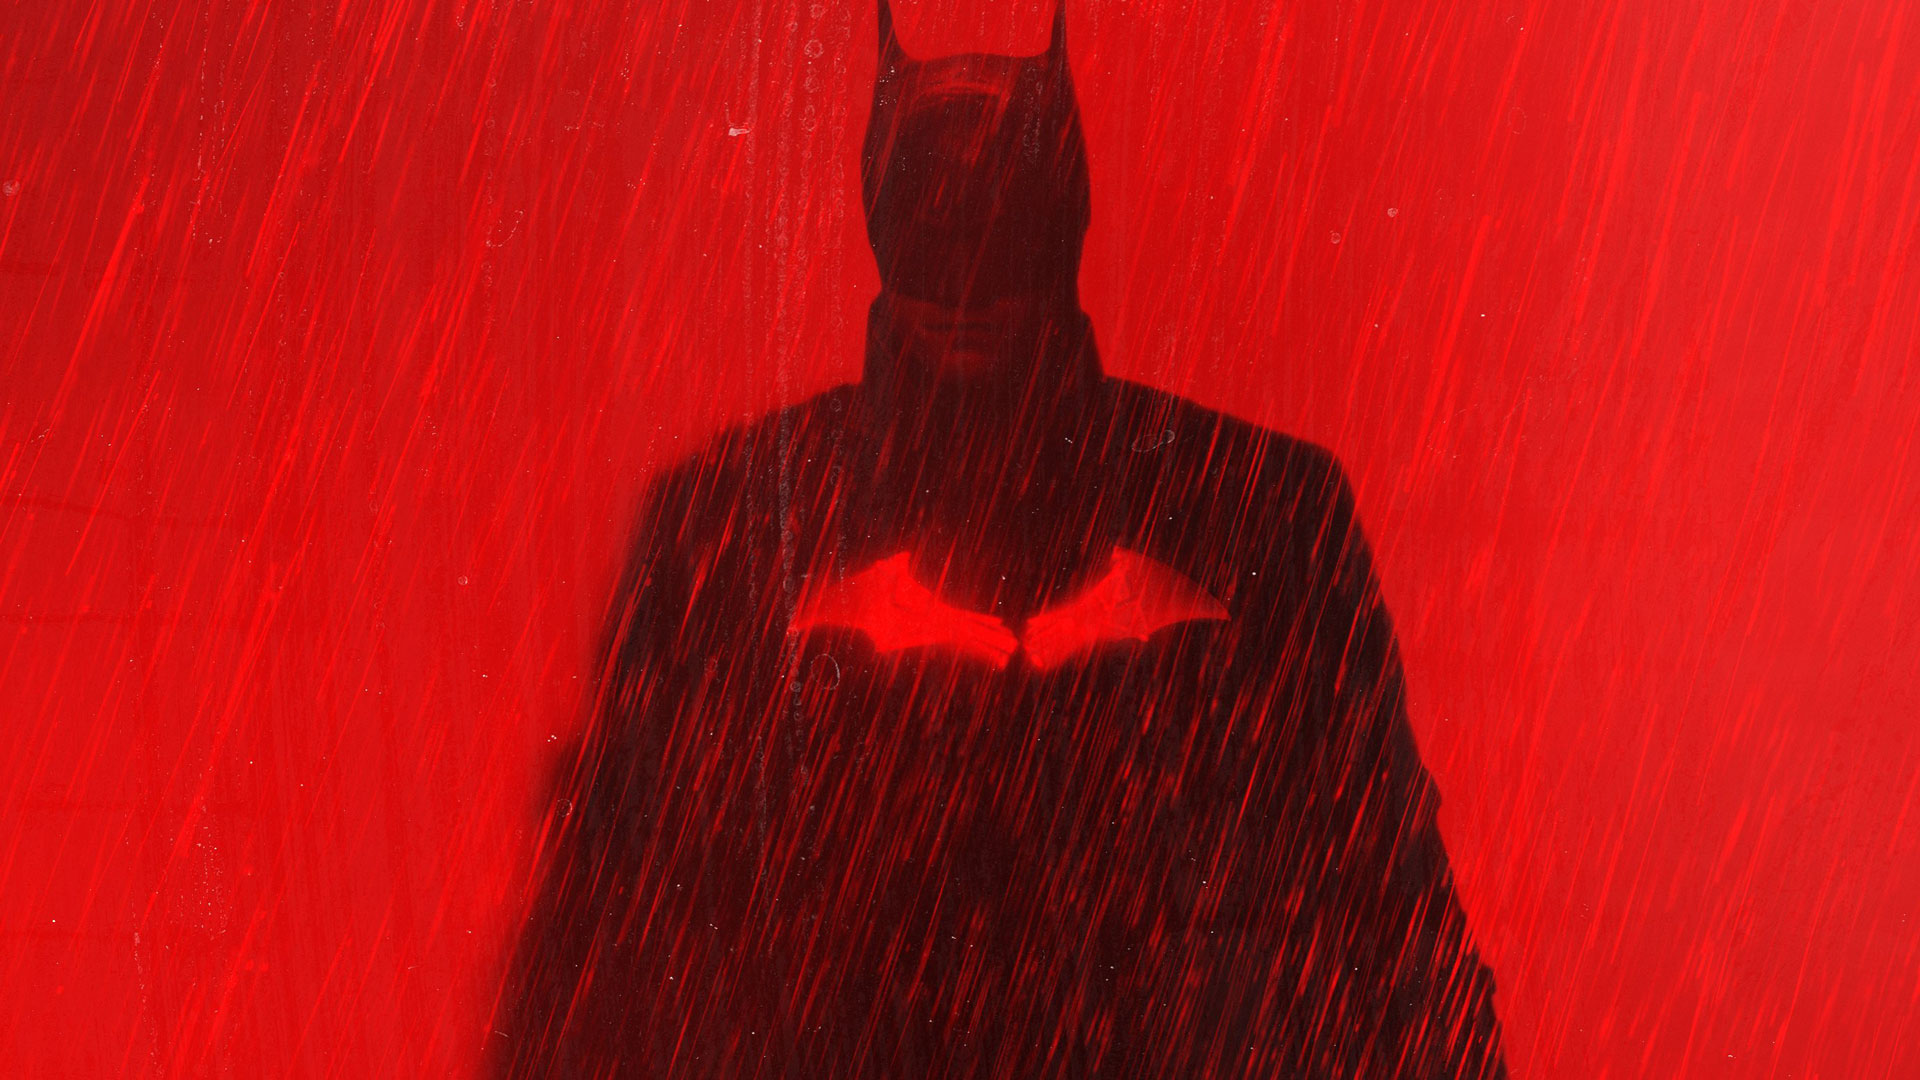 موشکافی تریلر جدید فیلم The Batman | ریدلر دربرابر بتمن